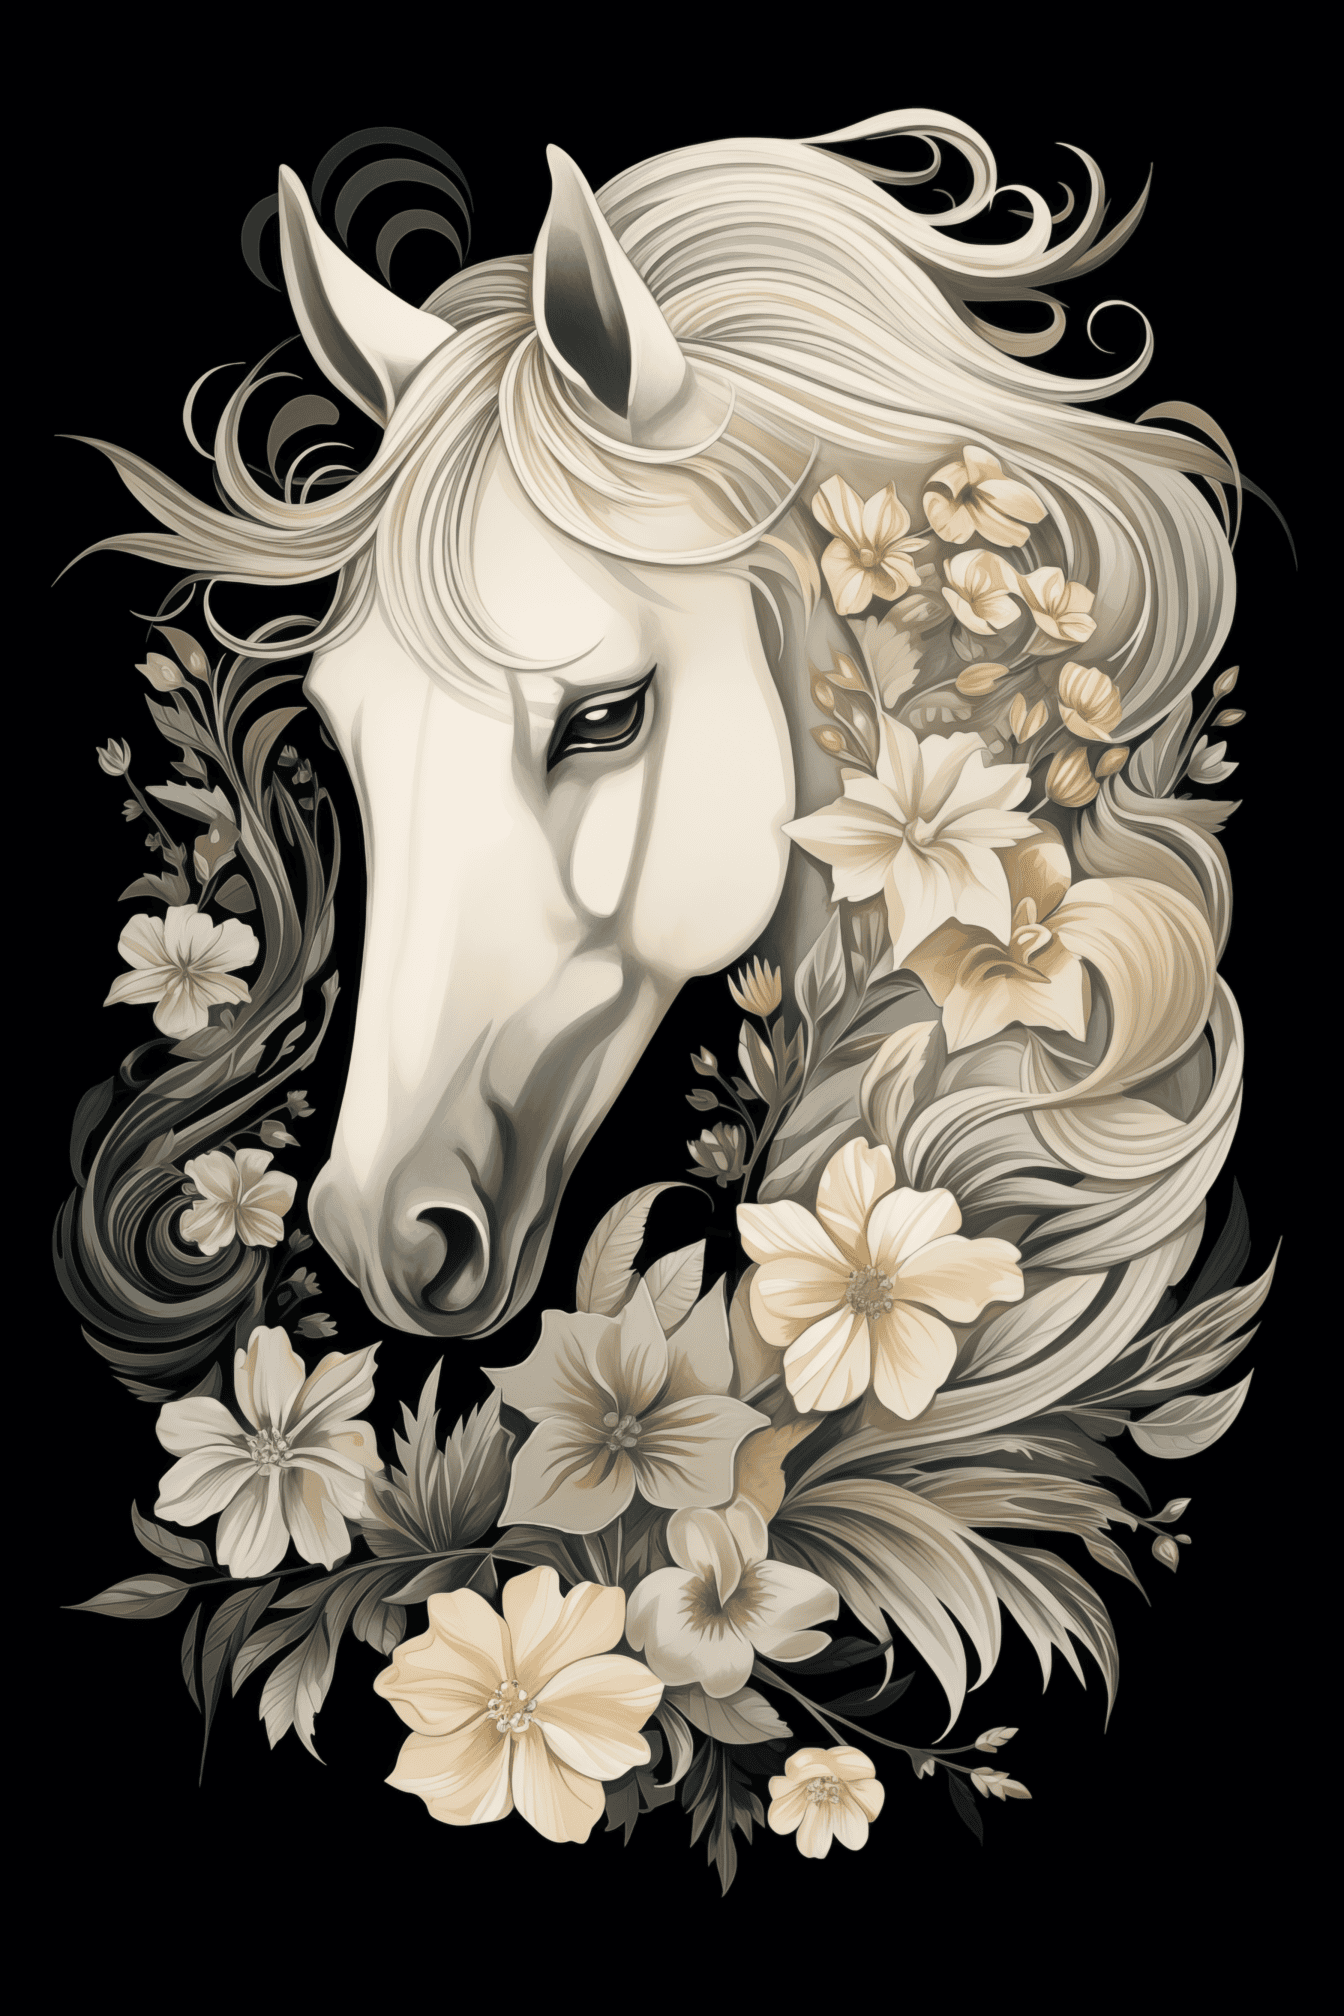 Illustration en noir et blanc d’une tête de cheval blanc avec des décorations florales